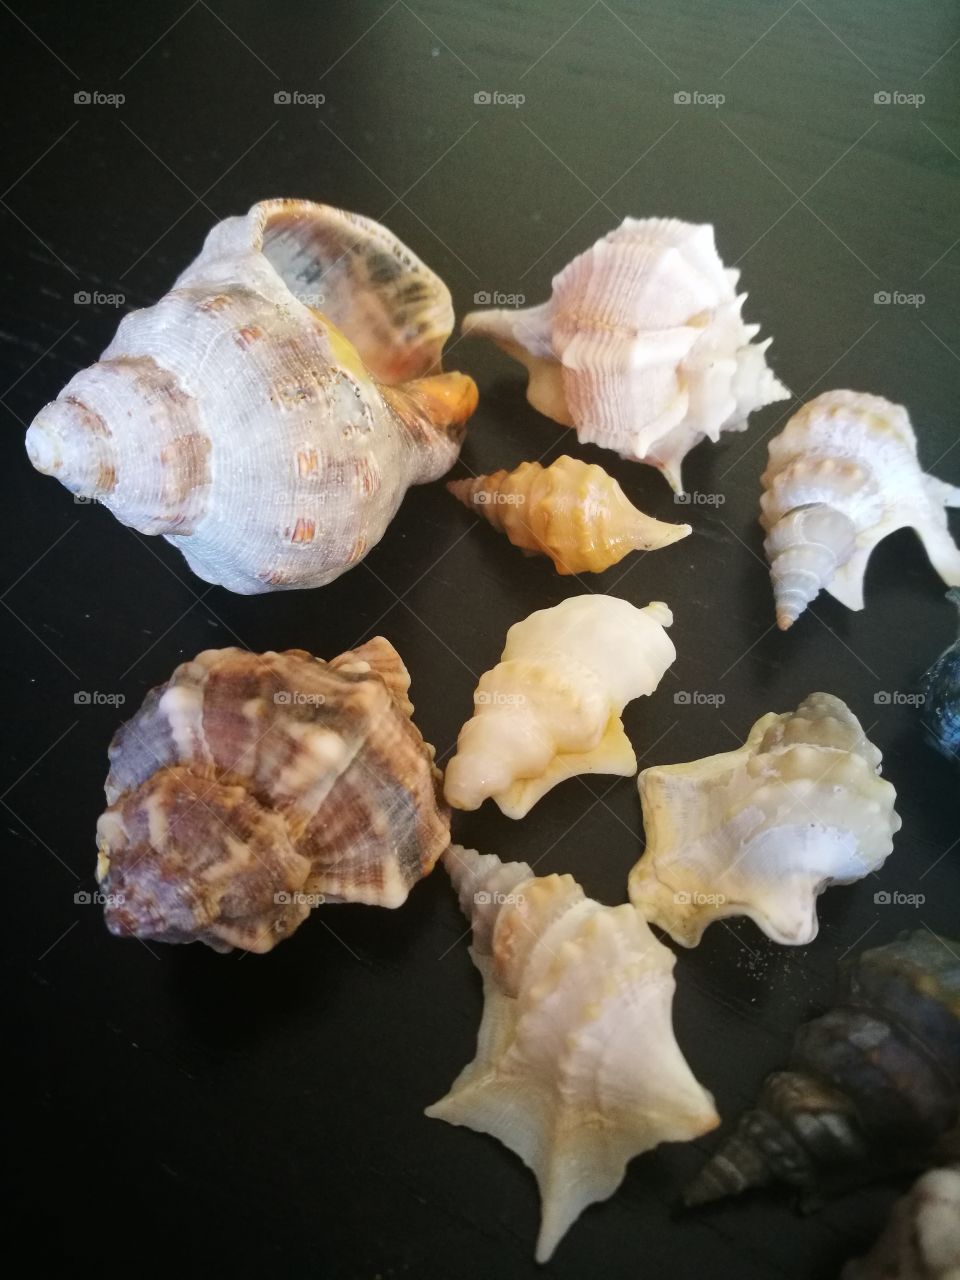 shellfish